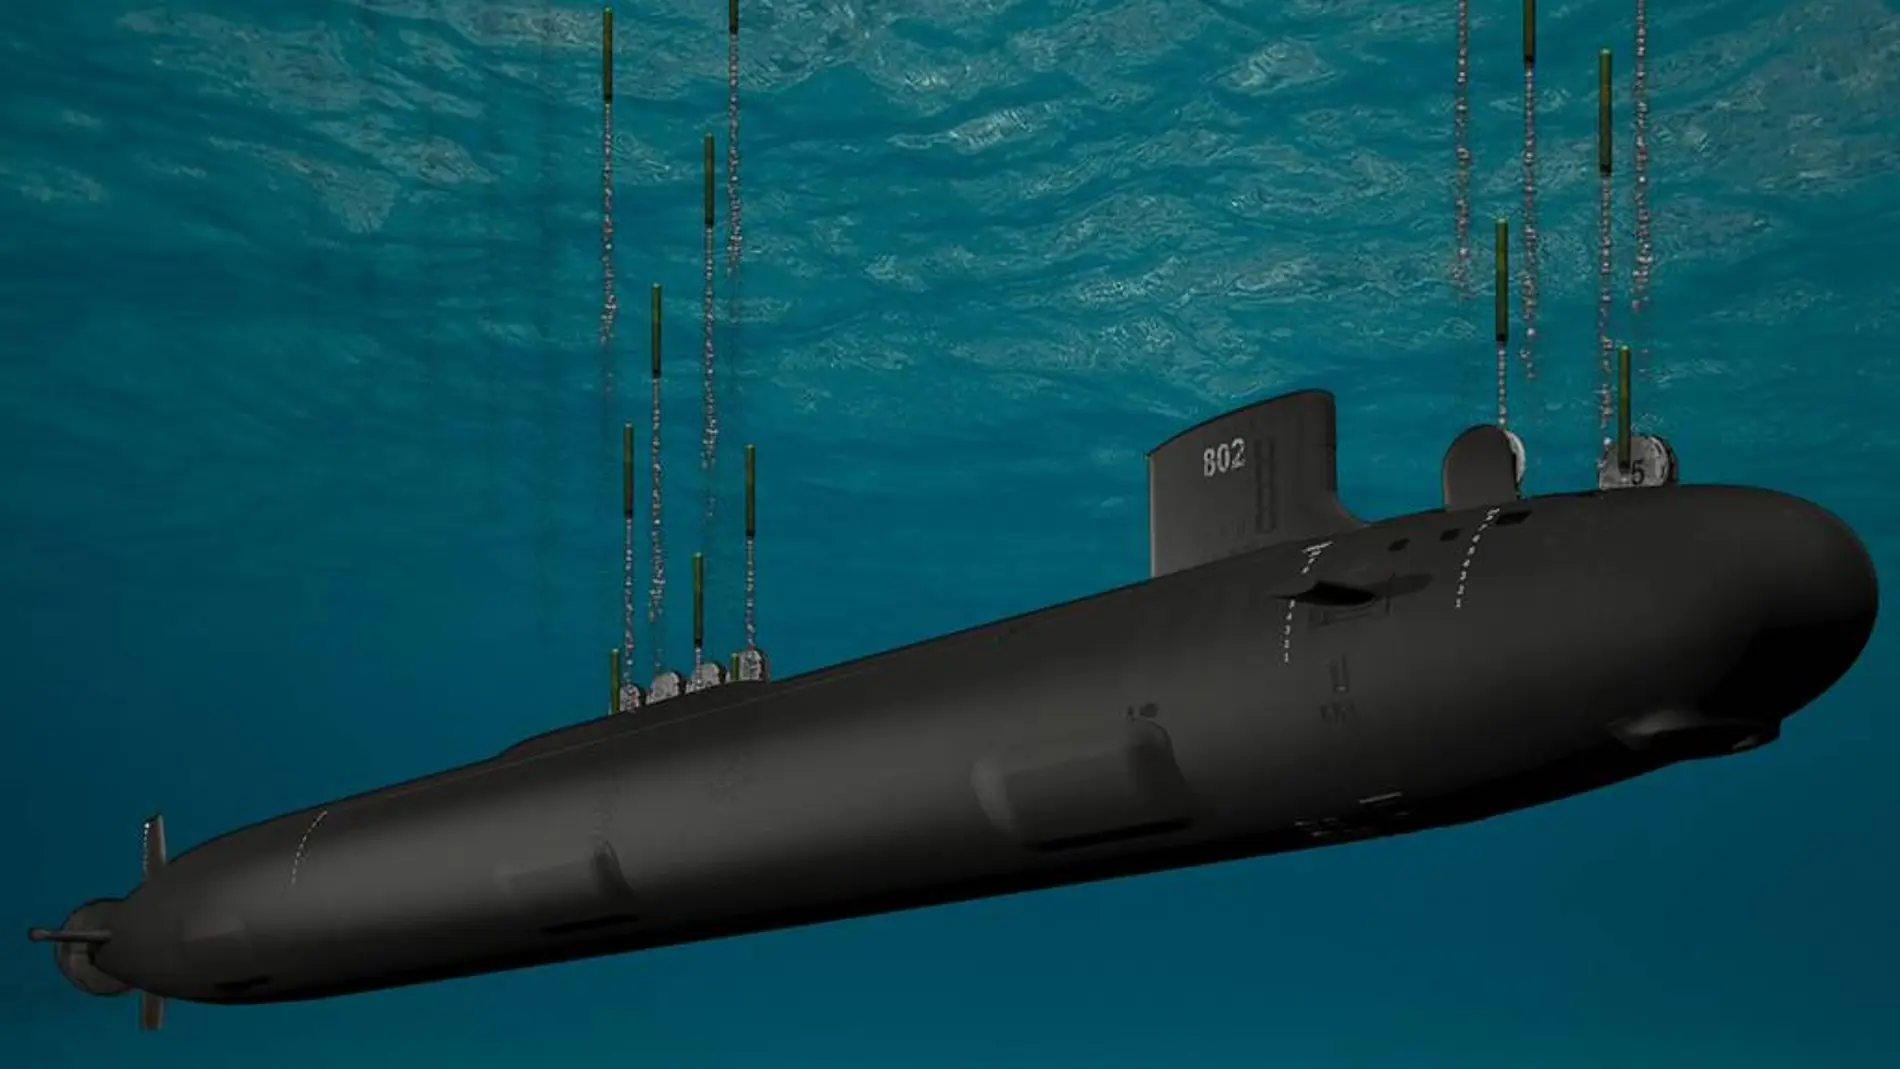 Imagen renderizada de un submarino tio Virginia desarrollado en EEUU